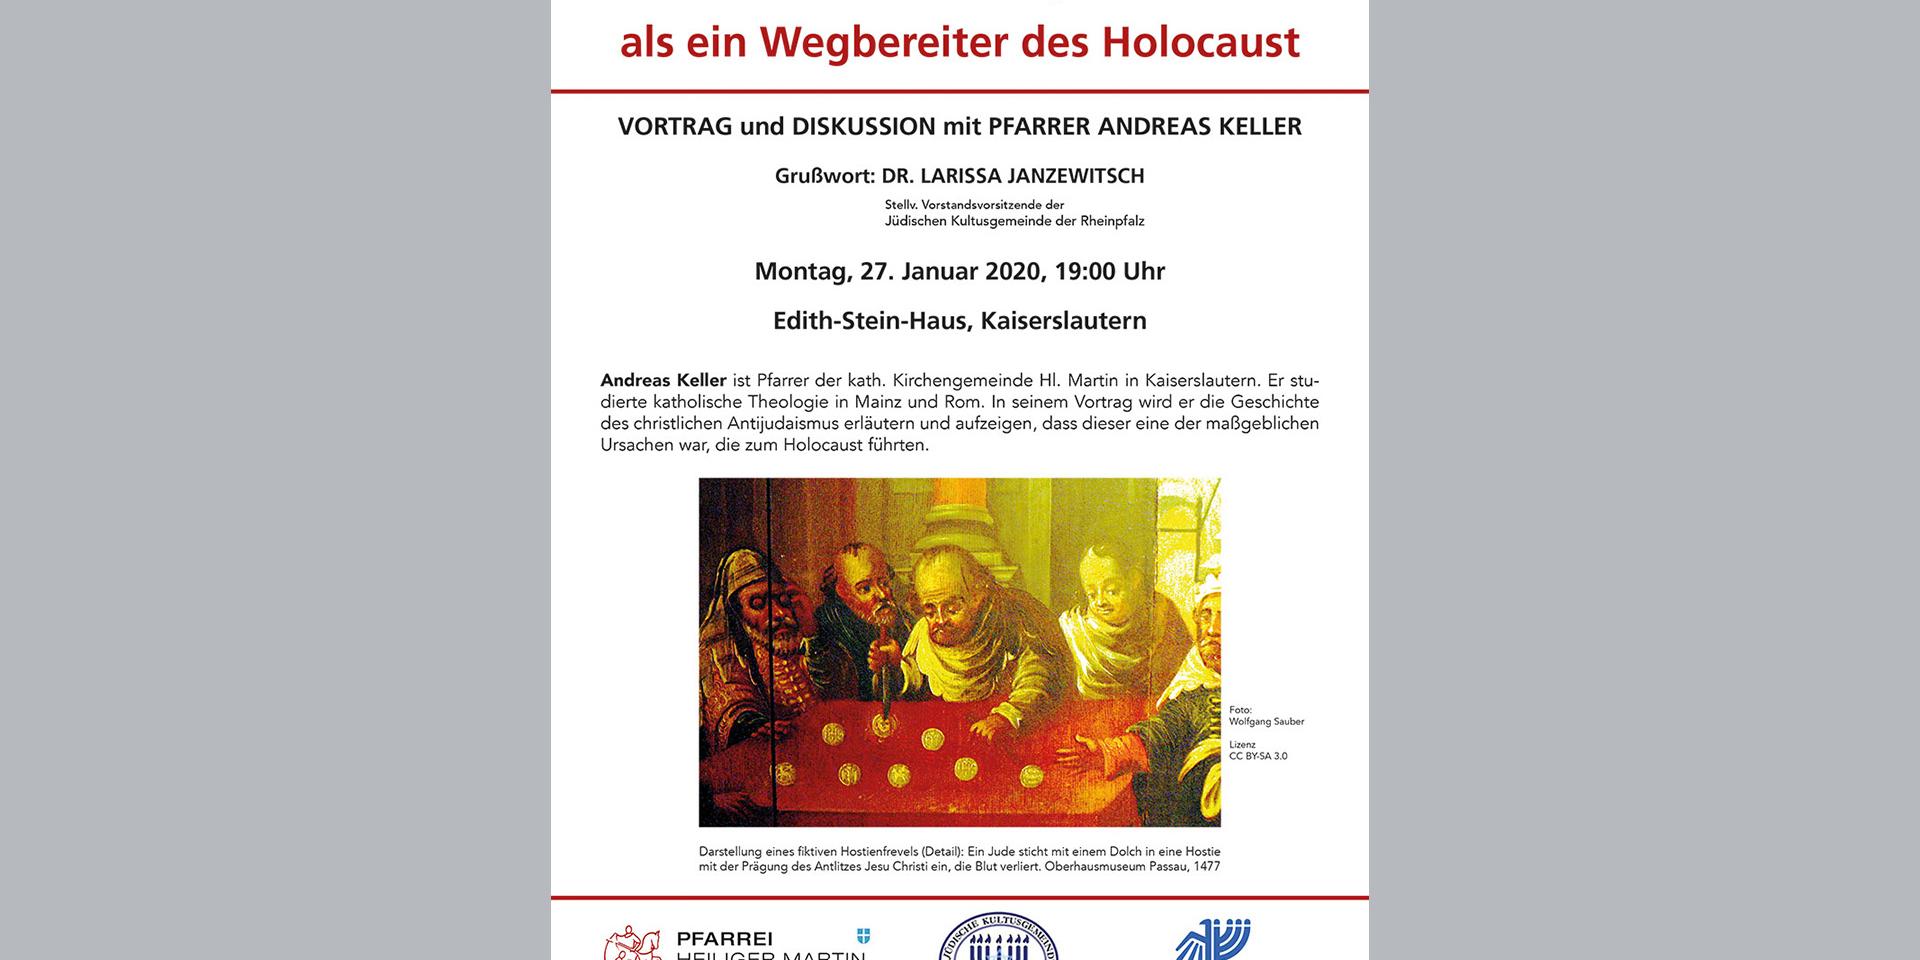 Vortrag Christlicher-Anitjudaismus als ein Wegbereiter des Holocaust